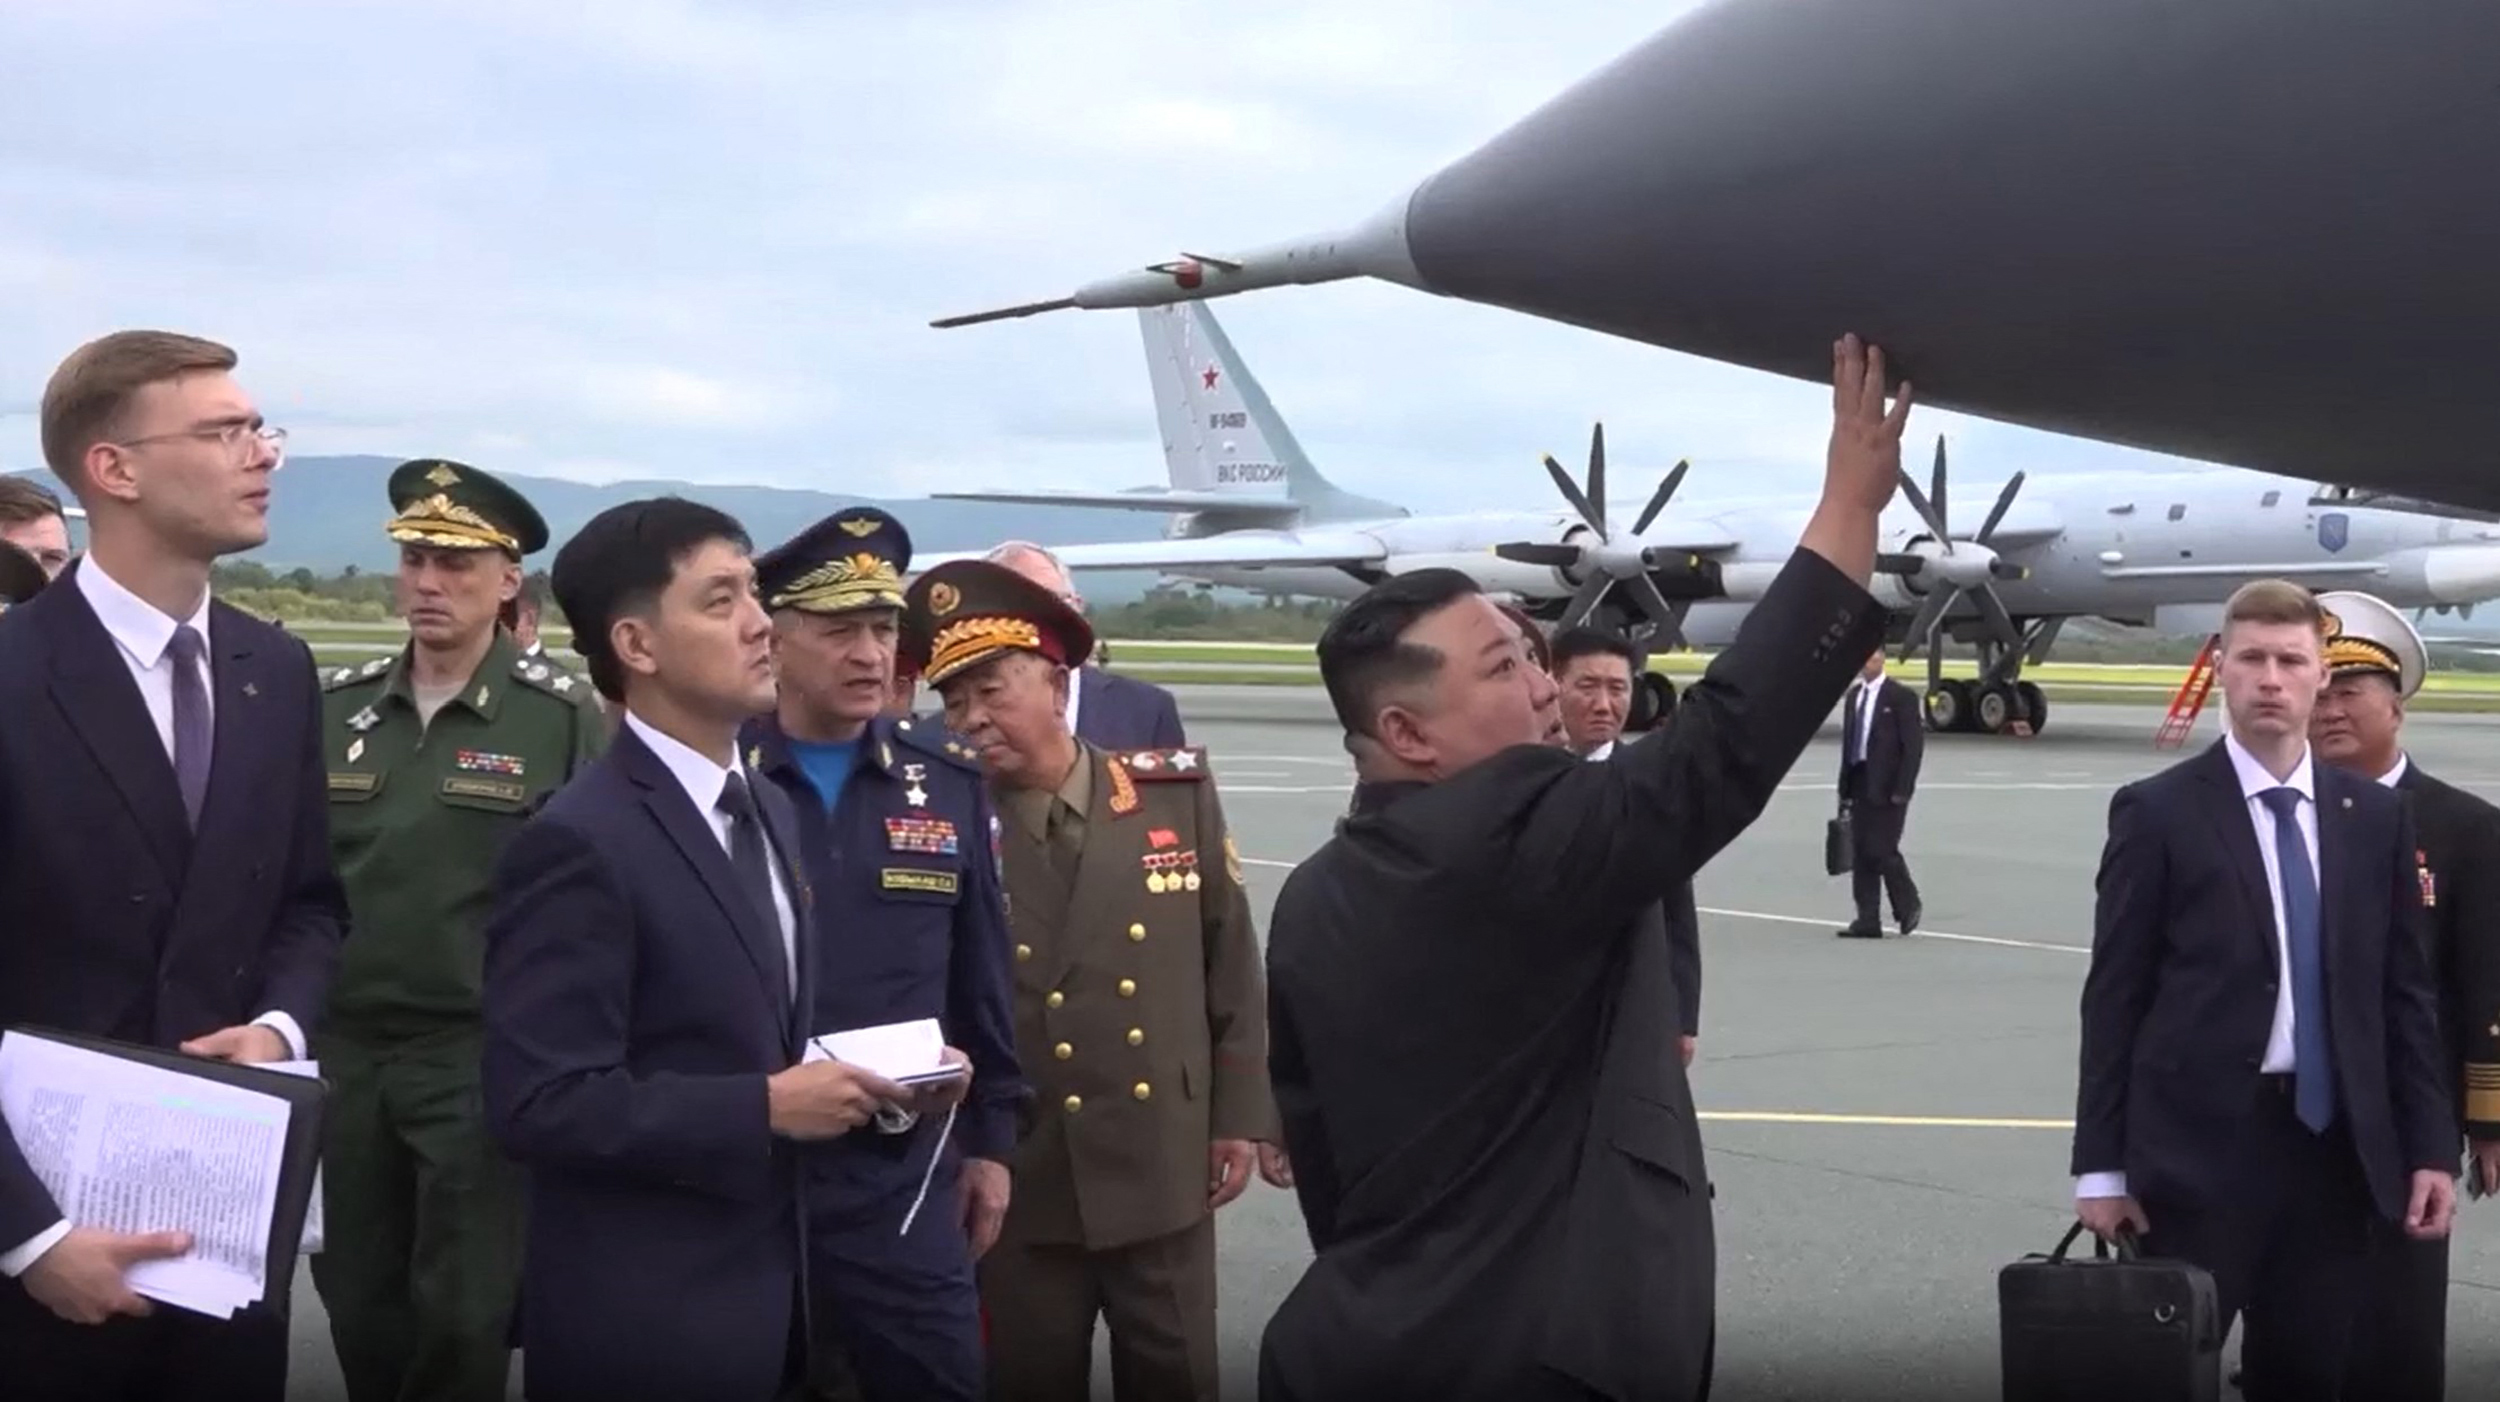 El líder norcoreano Kim Jong Un (c) visita el aeródromo de Knevichi, acompañado del ministro ruso de Defensa, Sergei Shoigu.